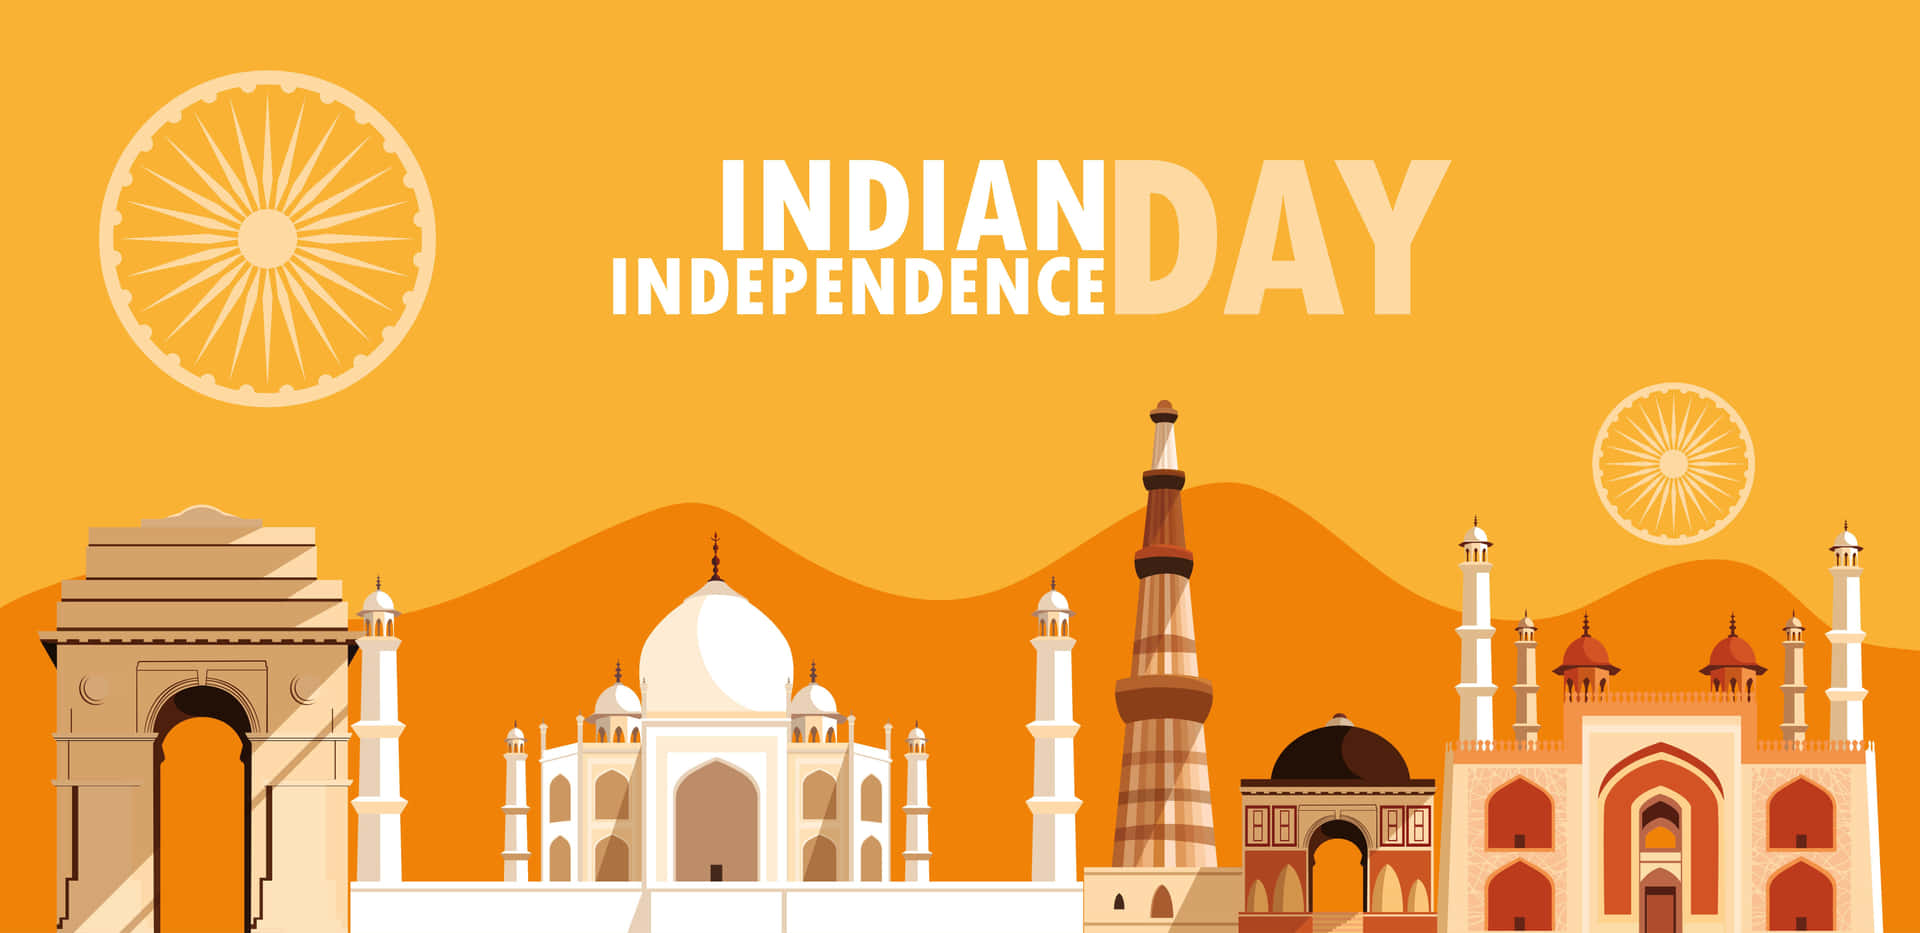 Giornodell'indipendenza Dell'india - Immagine Estetica Con Sfondo Arancione Dell'india.